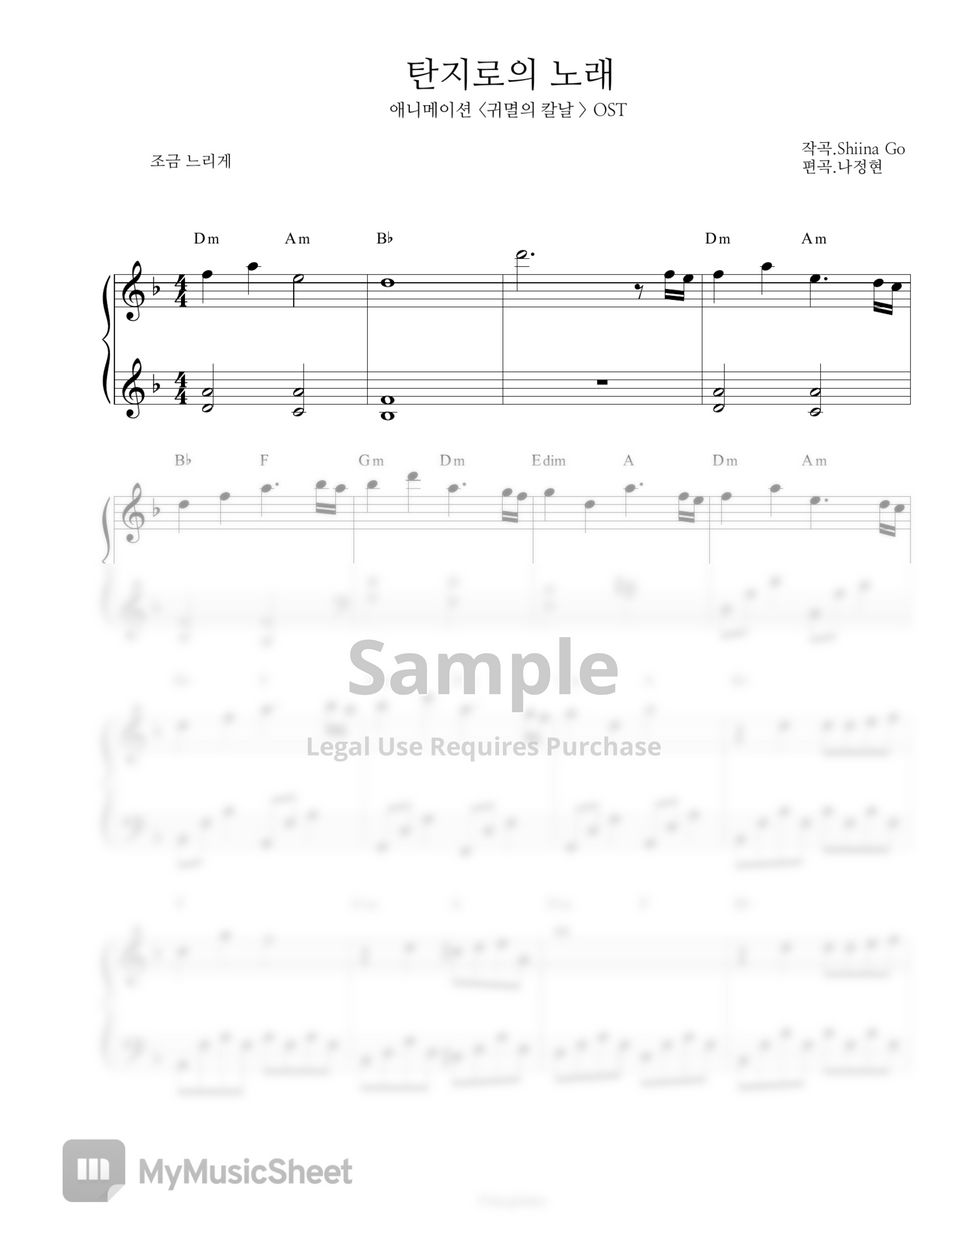 귀멸의 칼날 OST - 竈門炭治郎のうた (탄지로의 노래) (EASY VER.) by NA_PIANO